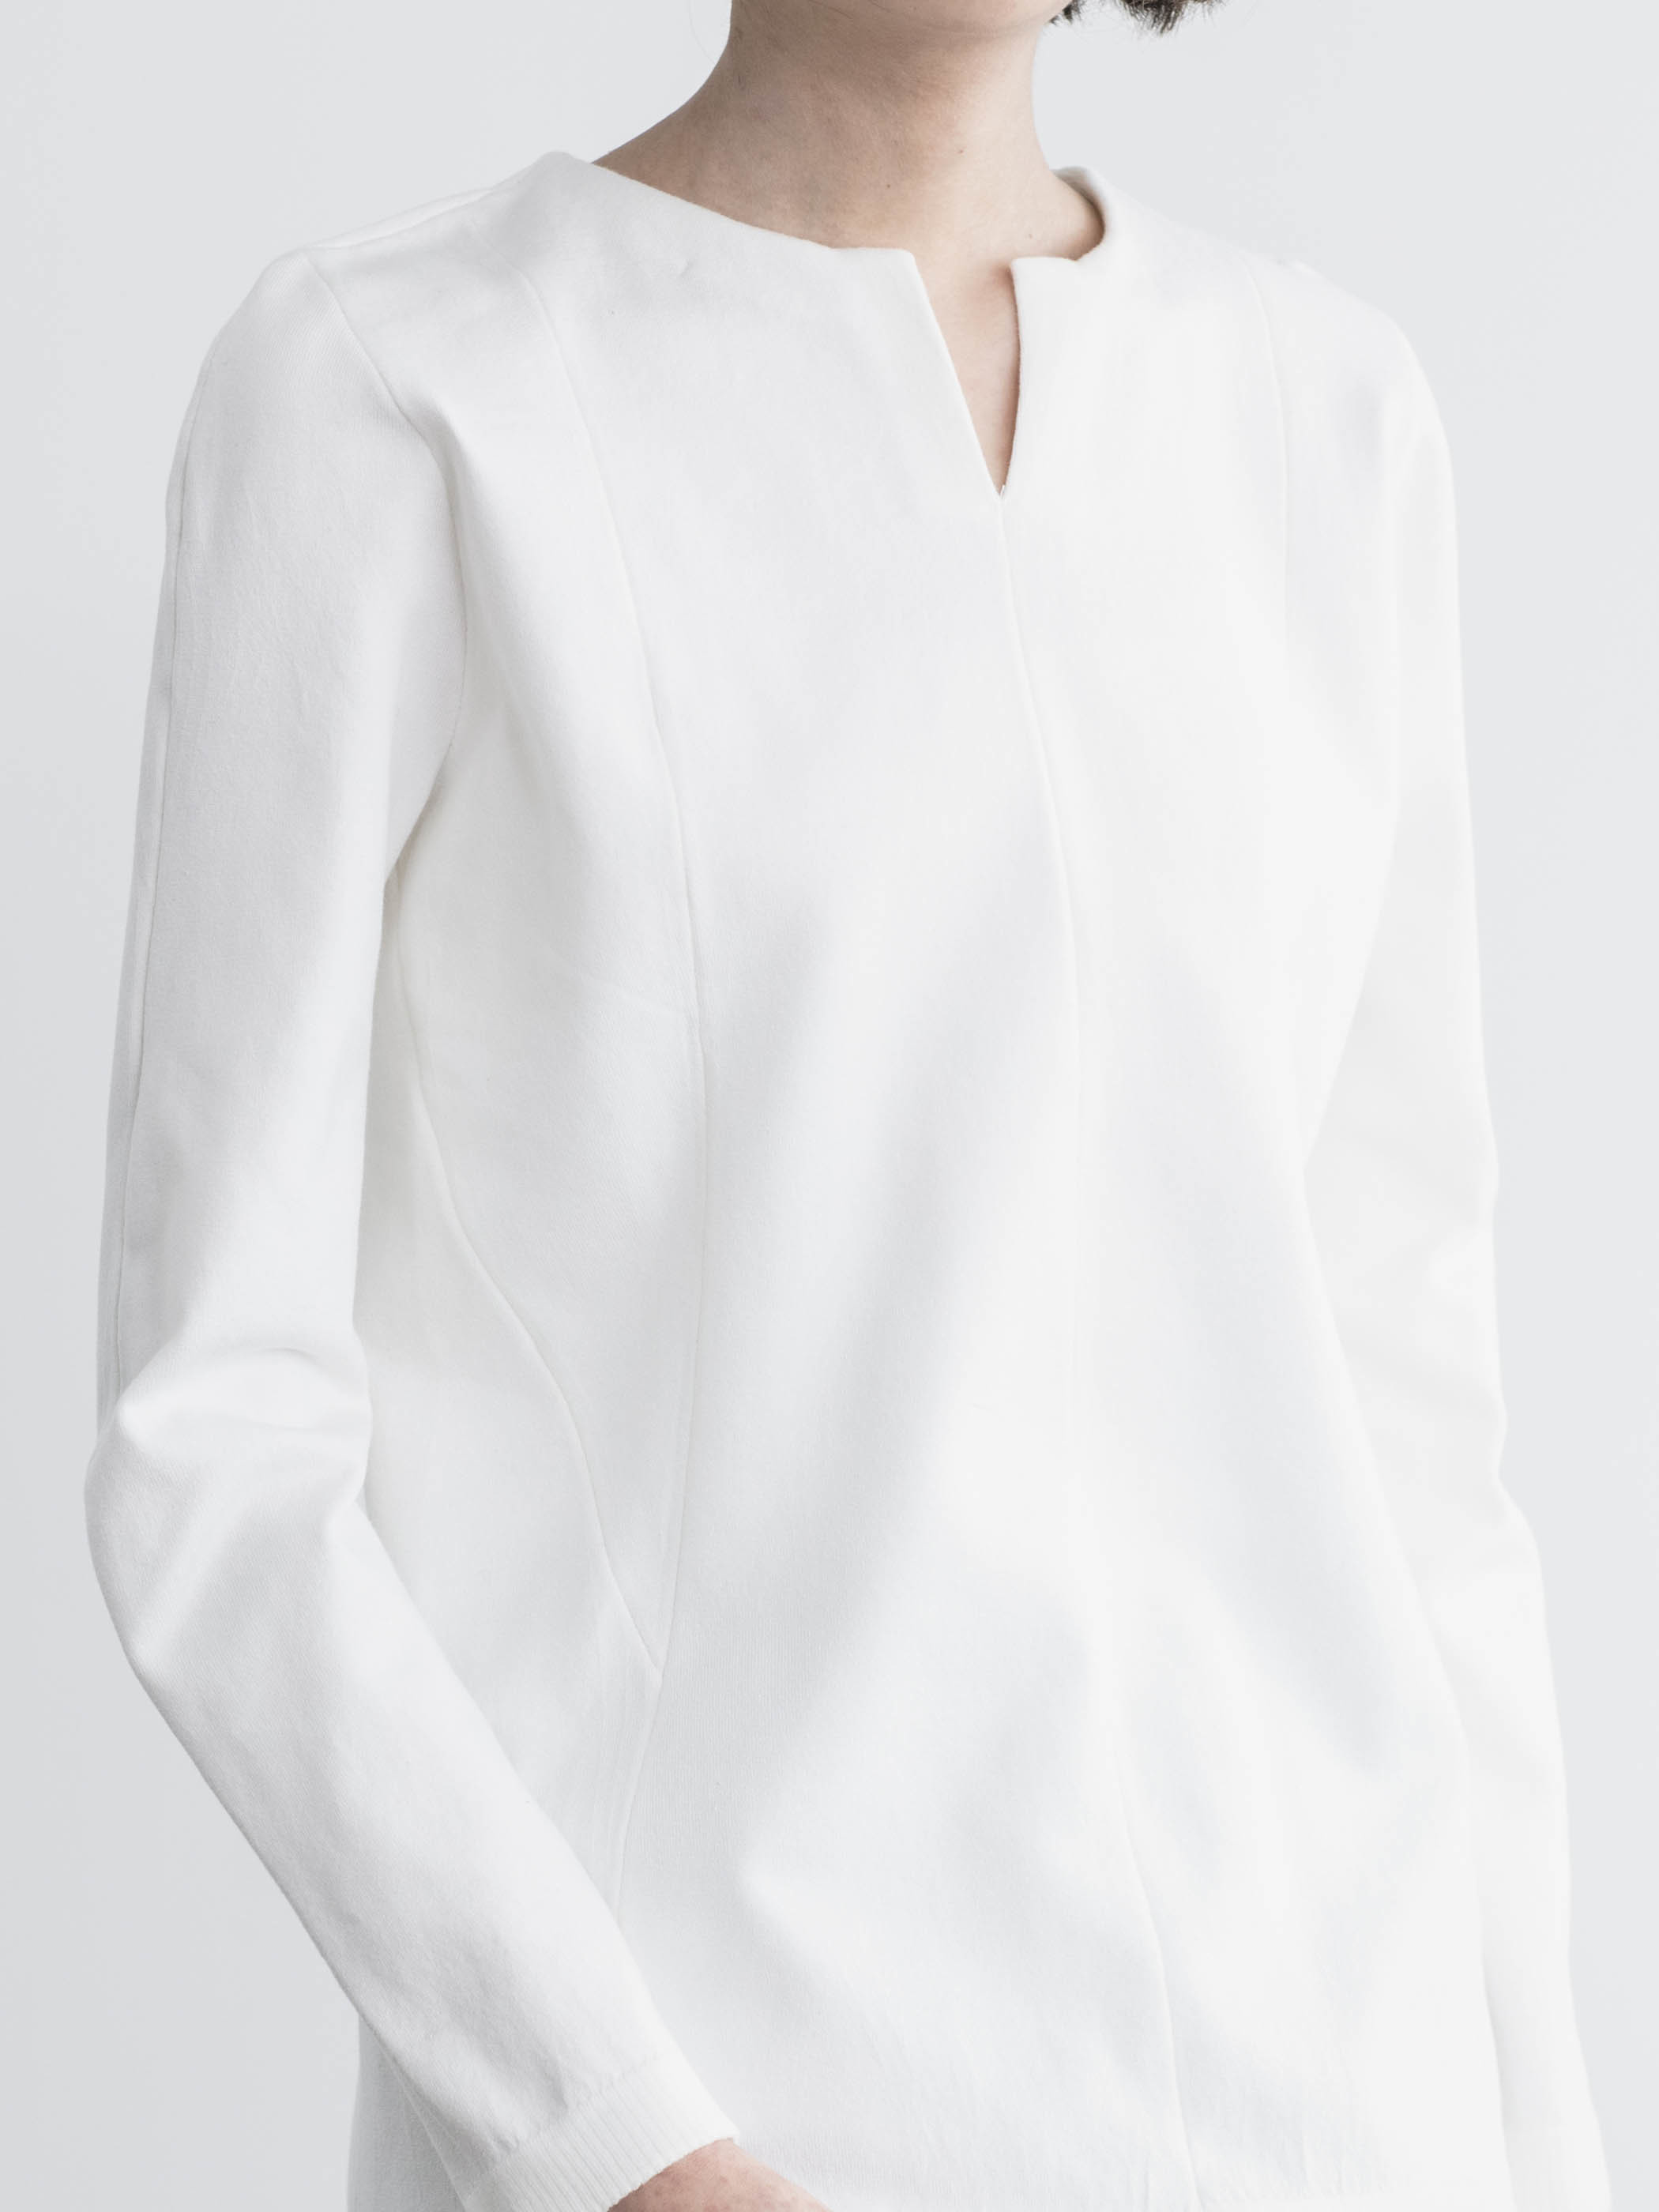 Work Wear collection Women’s V Necked Sweater　White(Vネックセーター・ホワイト)